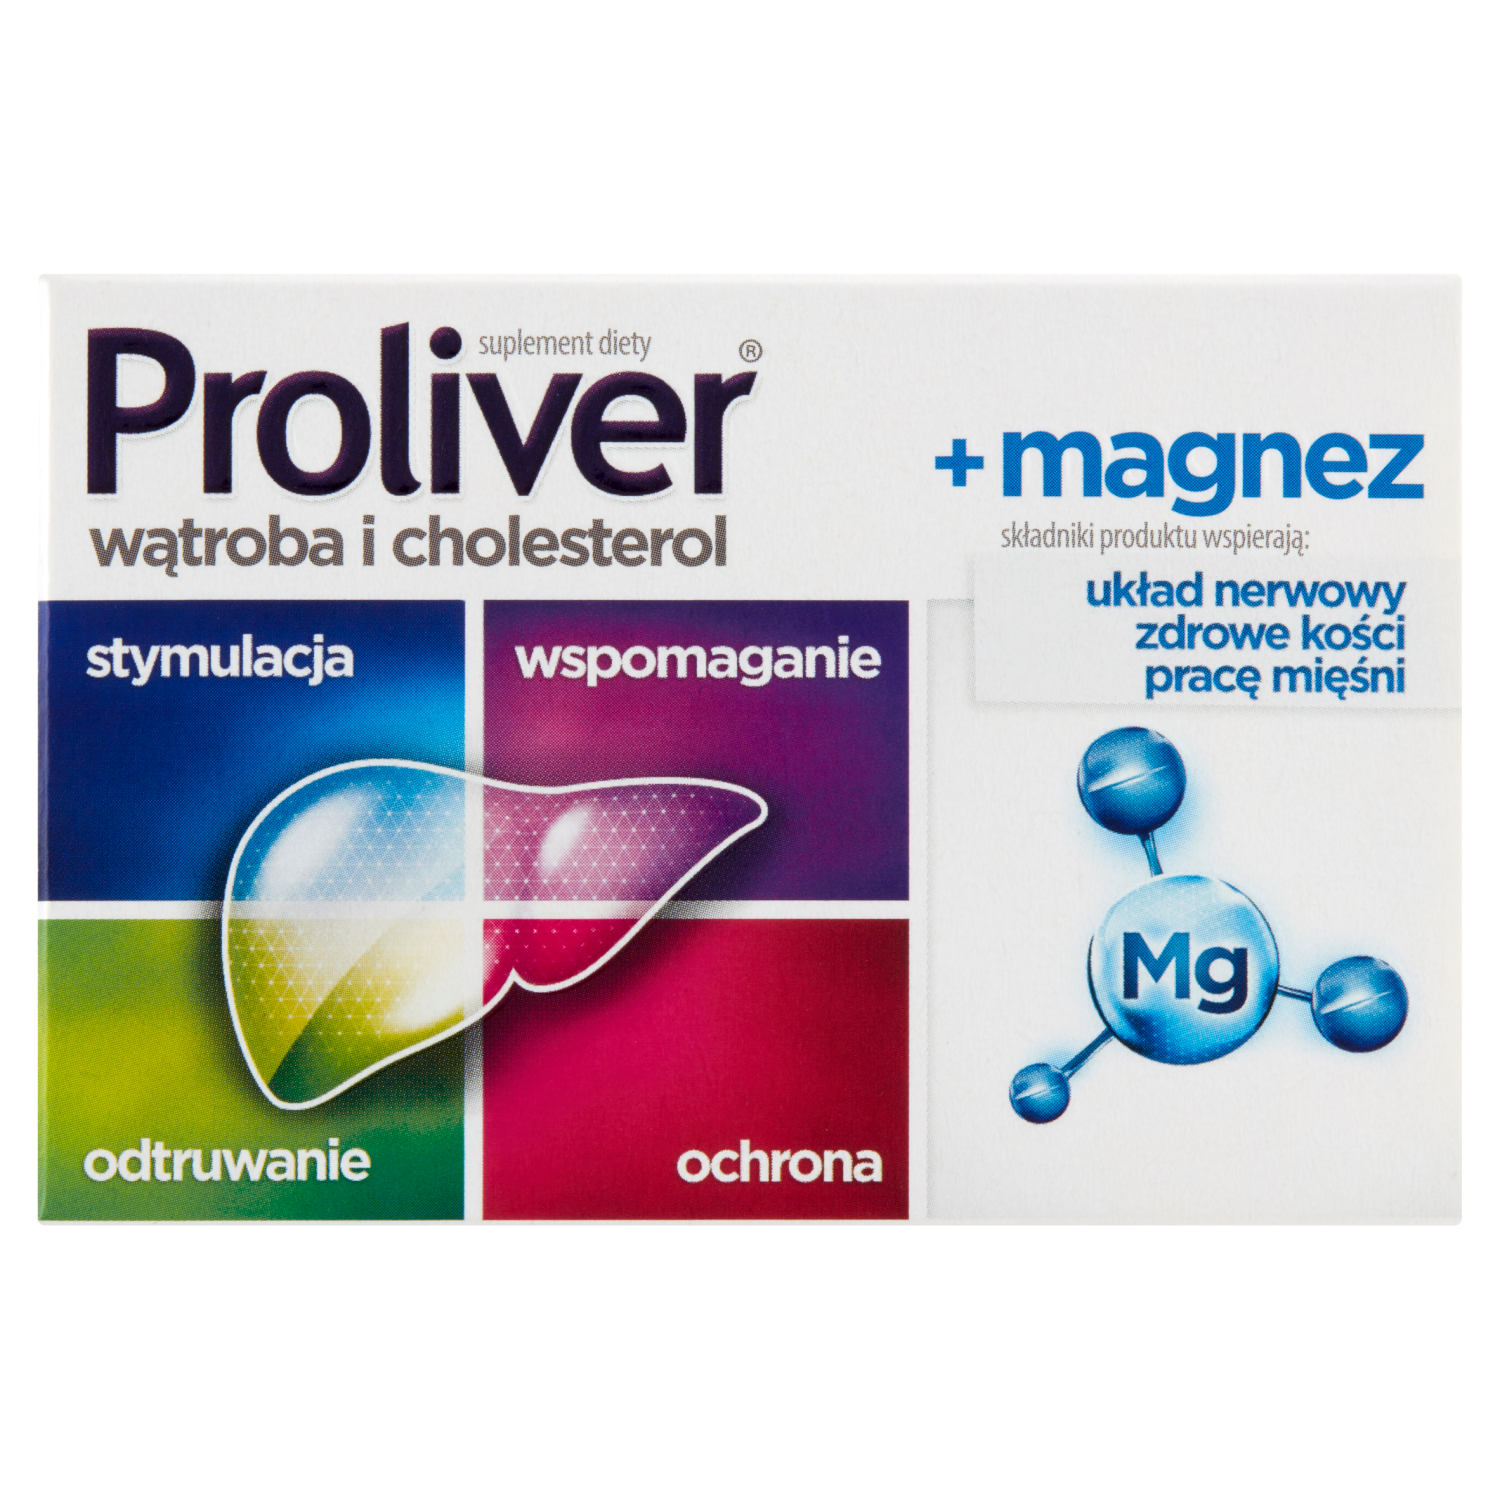 Proliver Magnez биологически активная добавка, 30 таблеток/1 упаковка